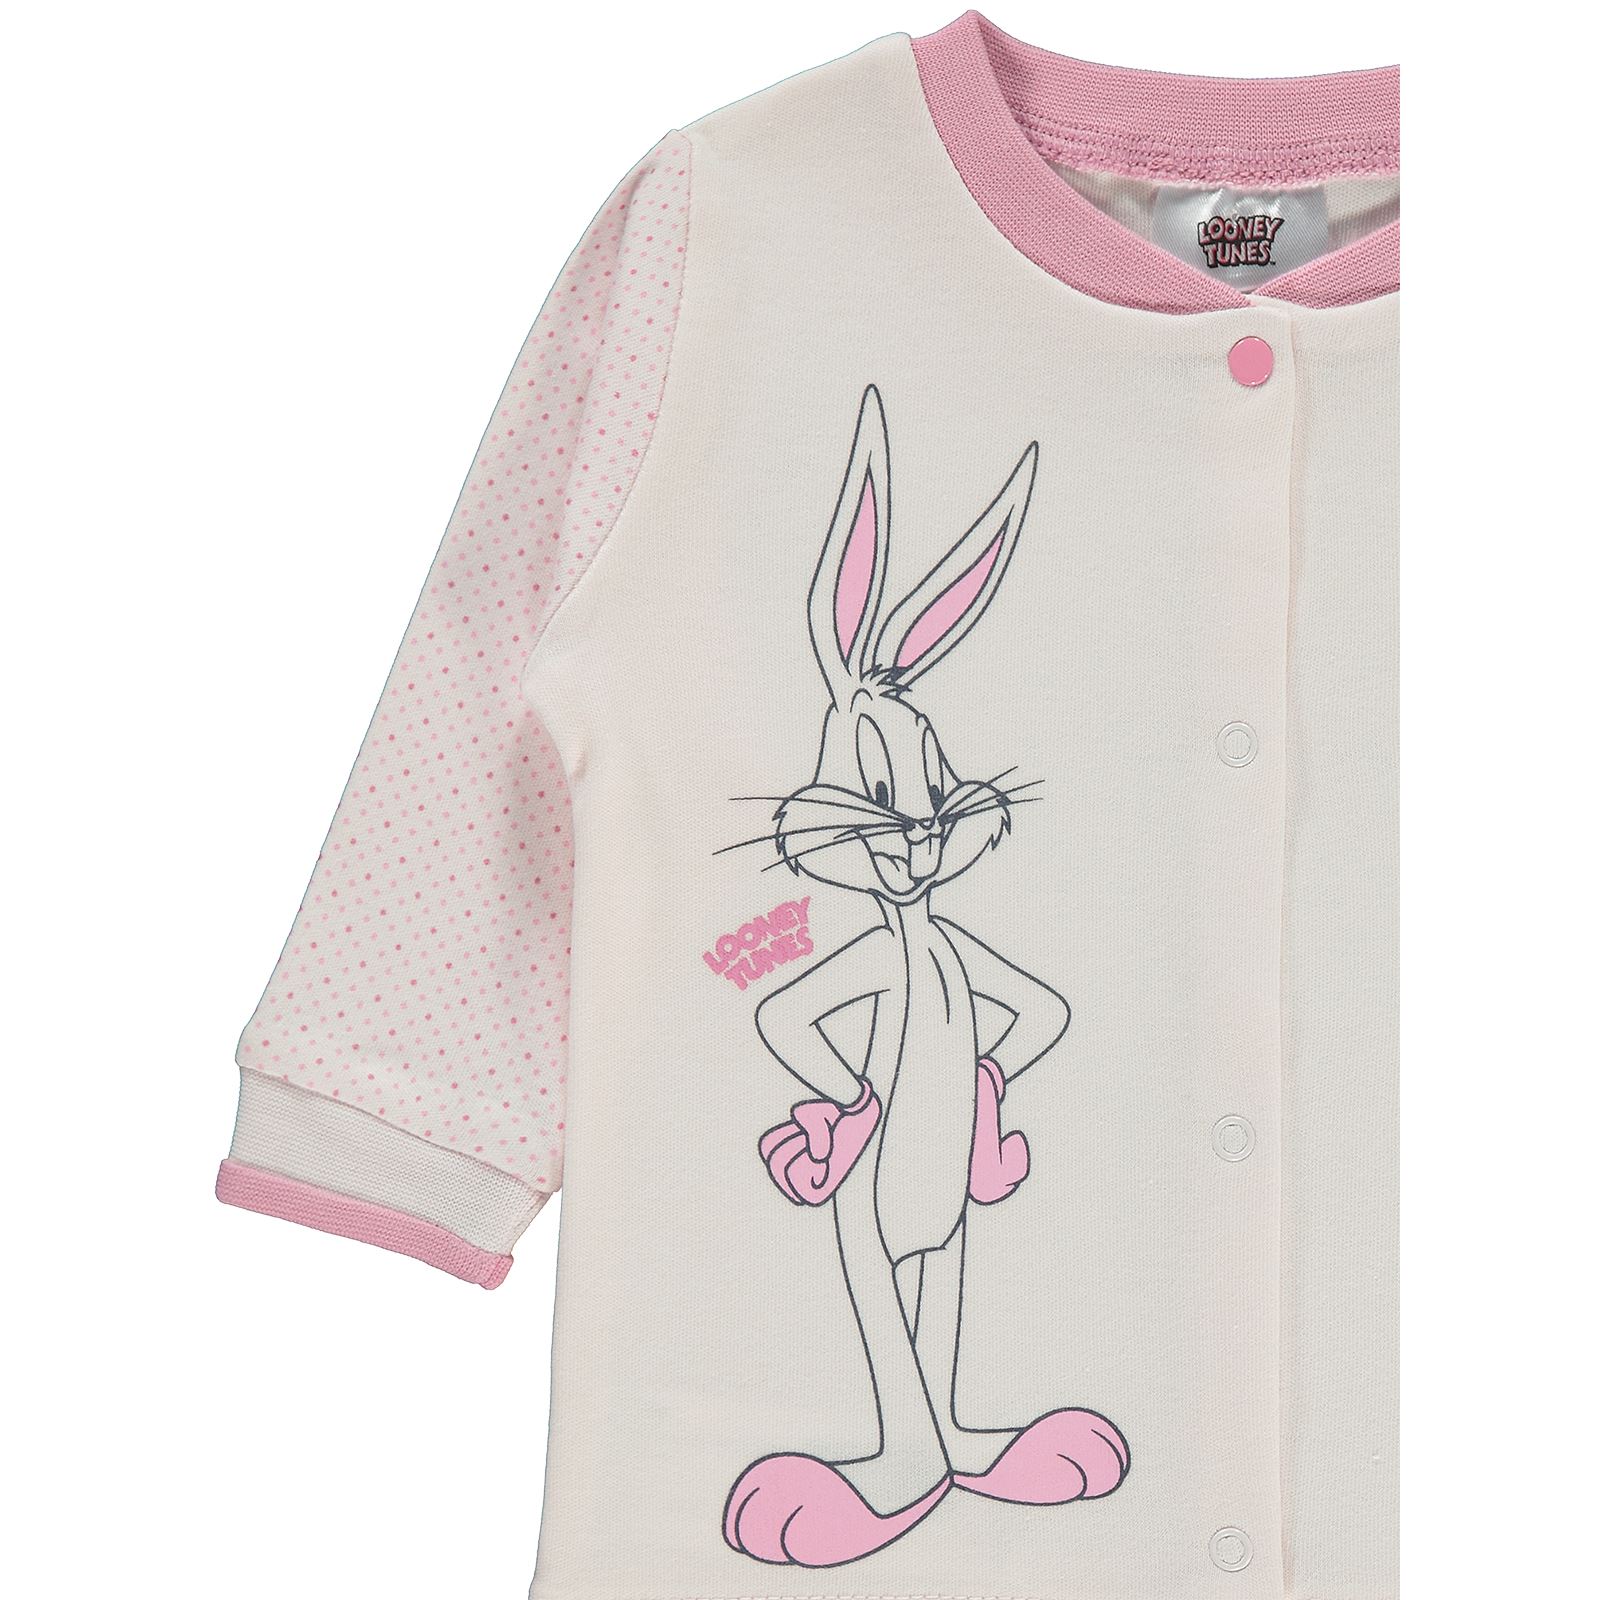 Bugs Bunny Kız Bebek Hırka 3-12 Ay Pembe